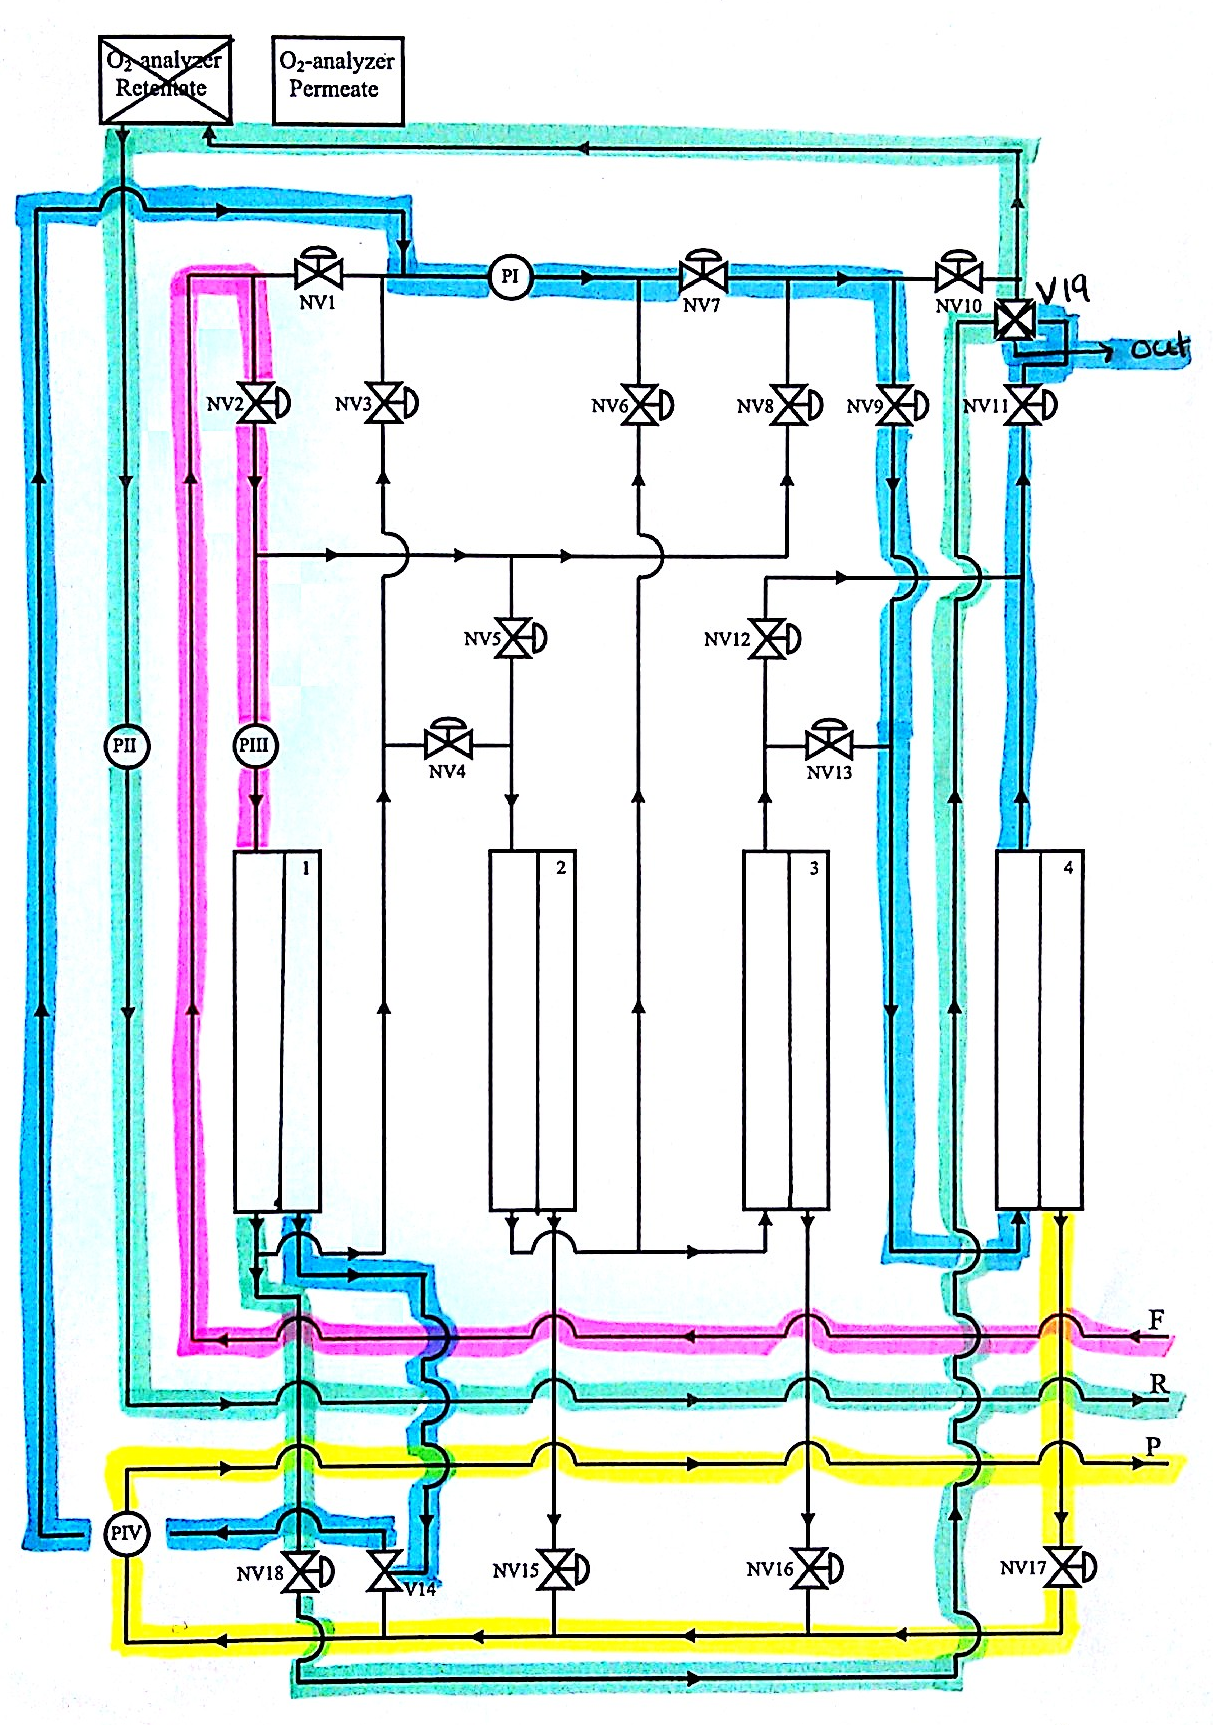 I Figur C.7 er flytskjema for konfigurasjon 6b vist. Figur C.7: Flytskjema for konfigurasjon 6b, som består av to moduler i serie med hensyn på permeatet.